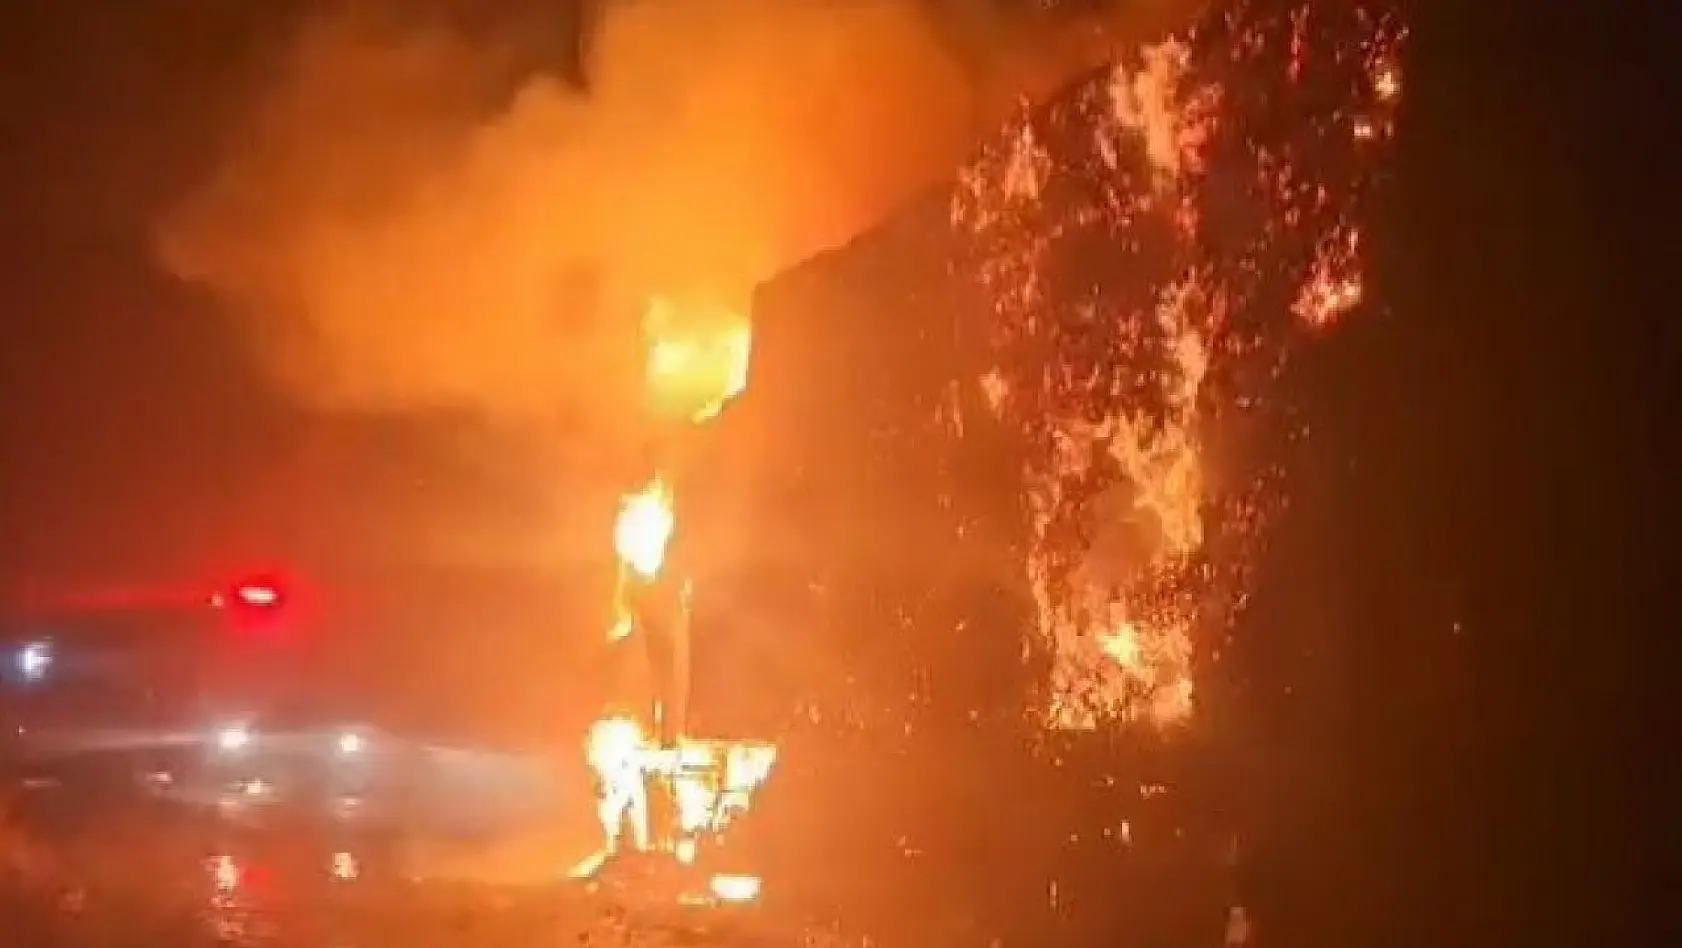 Manisa'da saman yüklü kamyon alev alev yandı